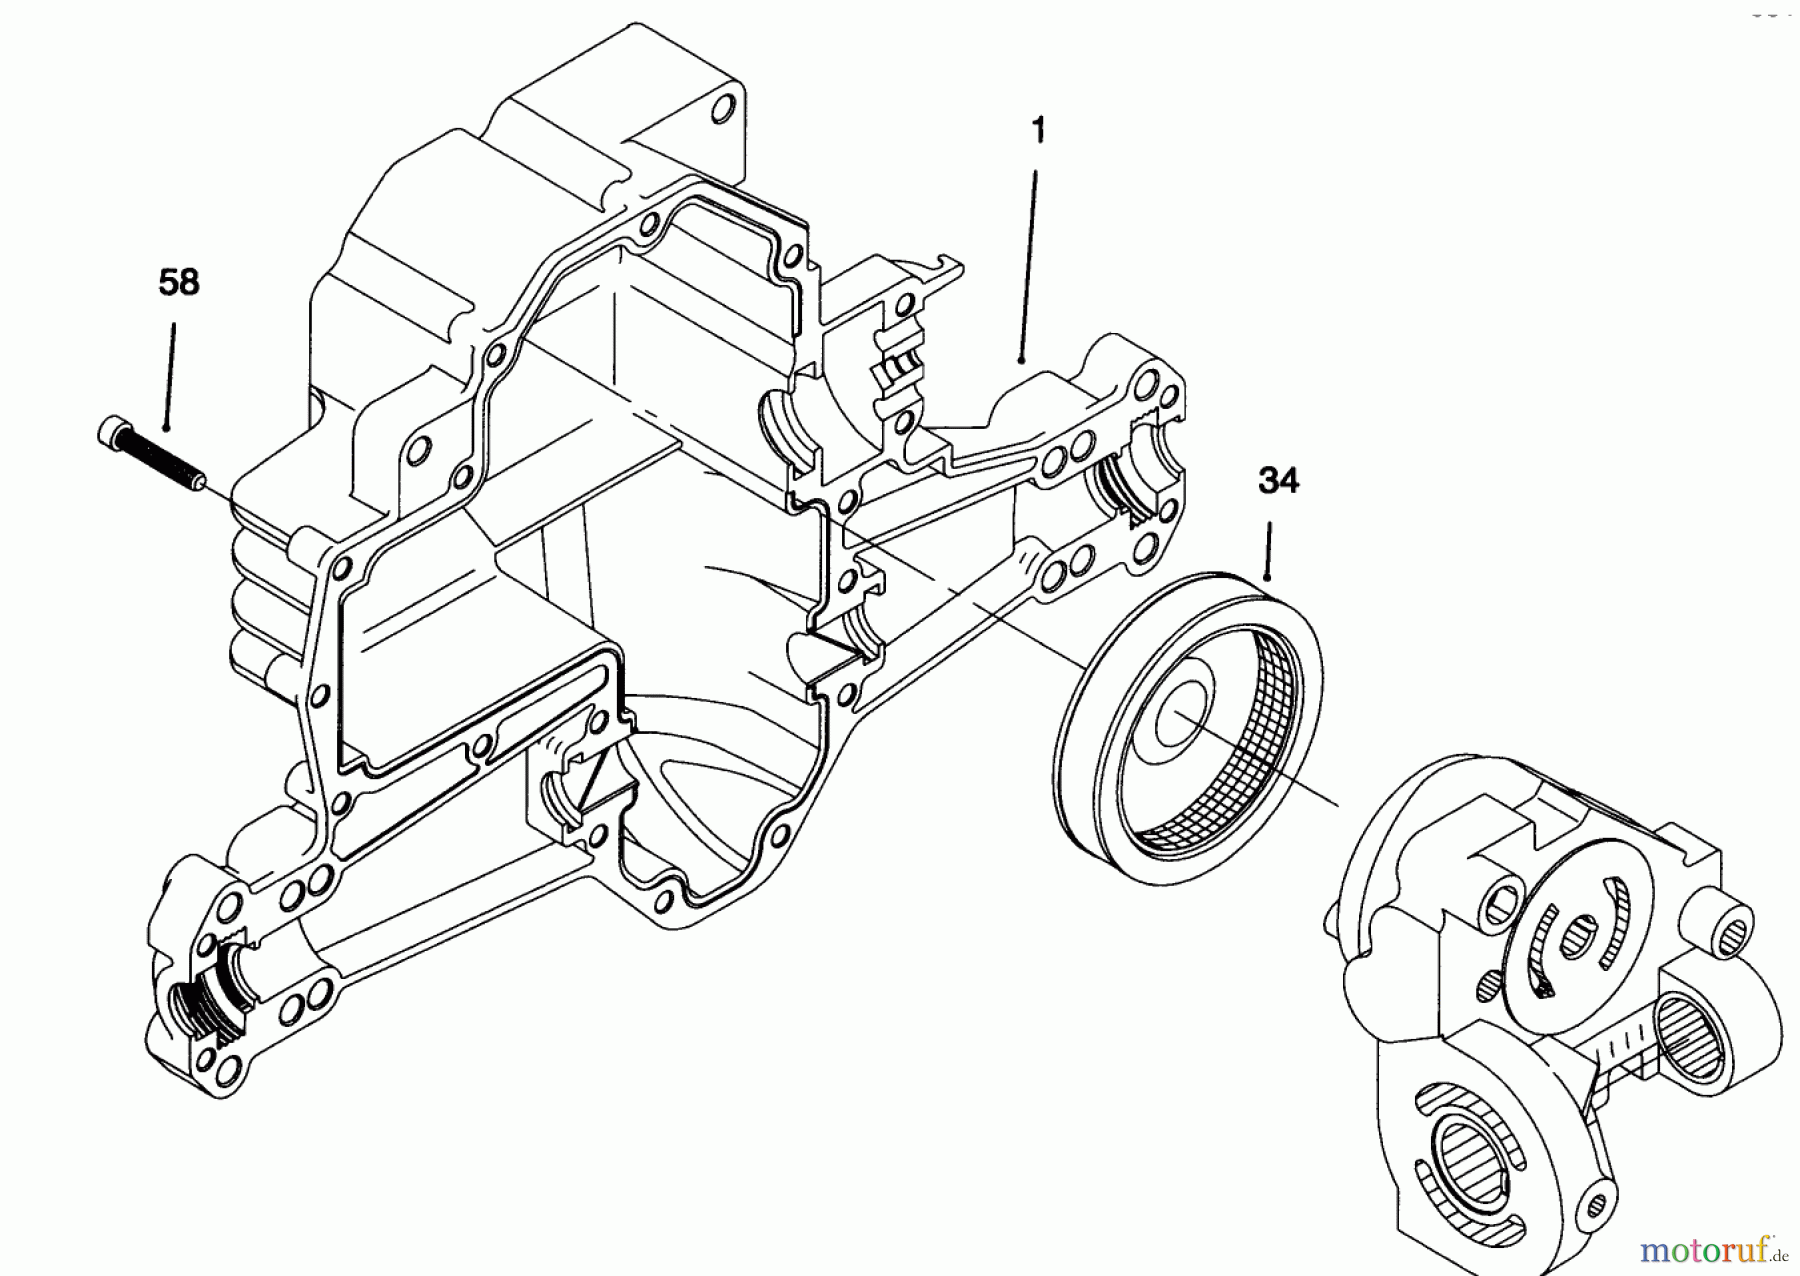  Toro Neu Mowers, Lawn & Garden Tractor Seite 1 71216 (15-44HXL) - Toro 15-44HXL Lawn Tractor, 1995 (59000001-59999999) HYDRO TRANSAXLE ASSEMBLY #4